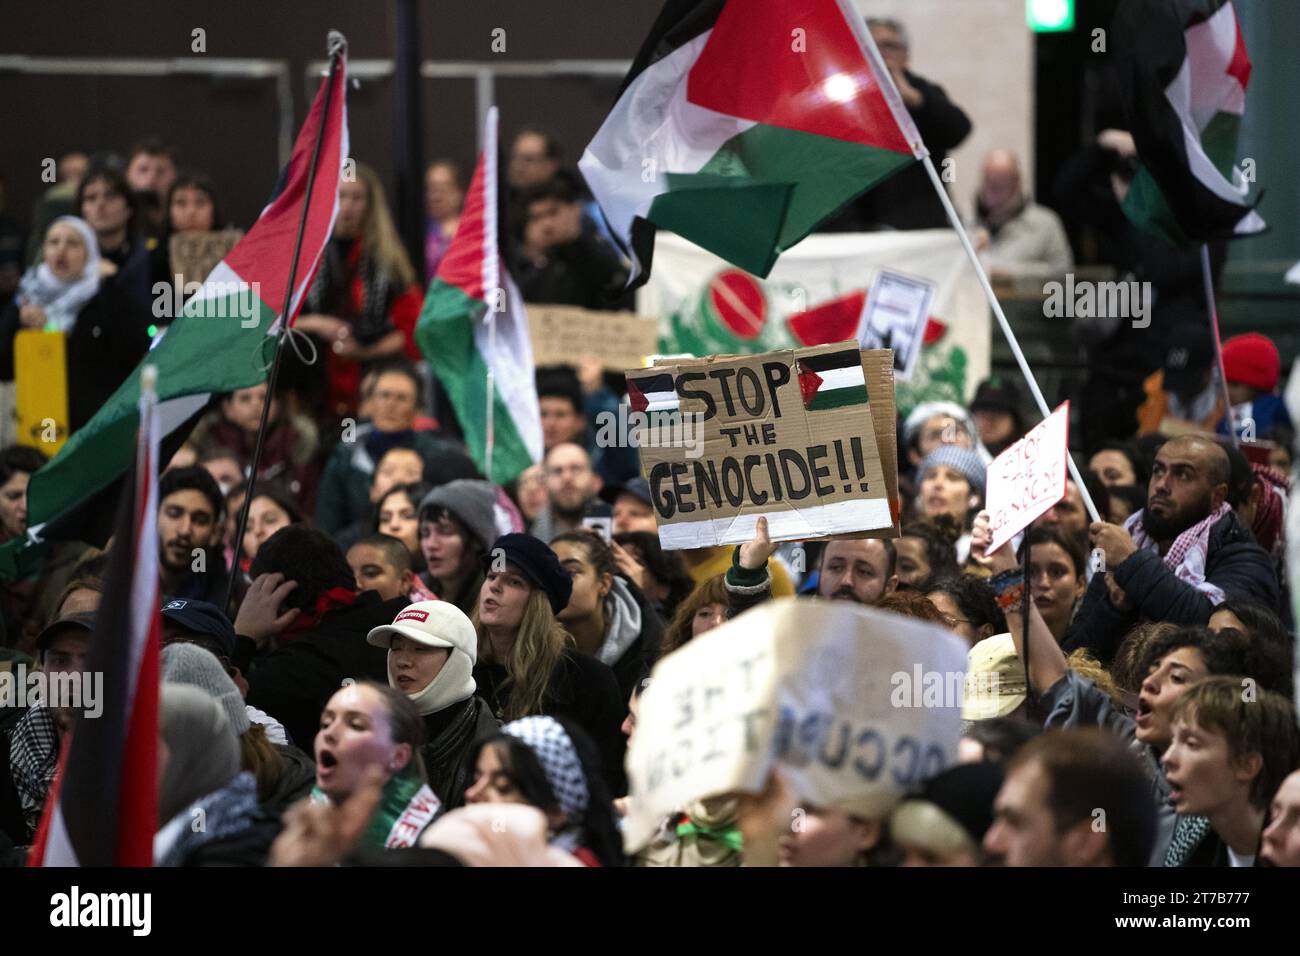 SCHIPHOL - Demonstranten halten einen Sit-in auf dem Schiphol Plaza ab, eine Form des Protestes, bei dem Demonstranten massenhaft auf dem Boden sitzen. Der Protest wurde von einer Aktionsgruppe organisiert, um Solidarität mit Gaza zu zeigen. ANP JEROEN JUMELET niederlande Out - belgien Out Stockfoto